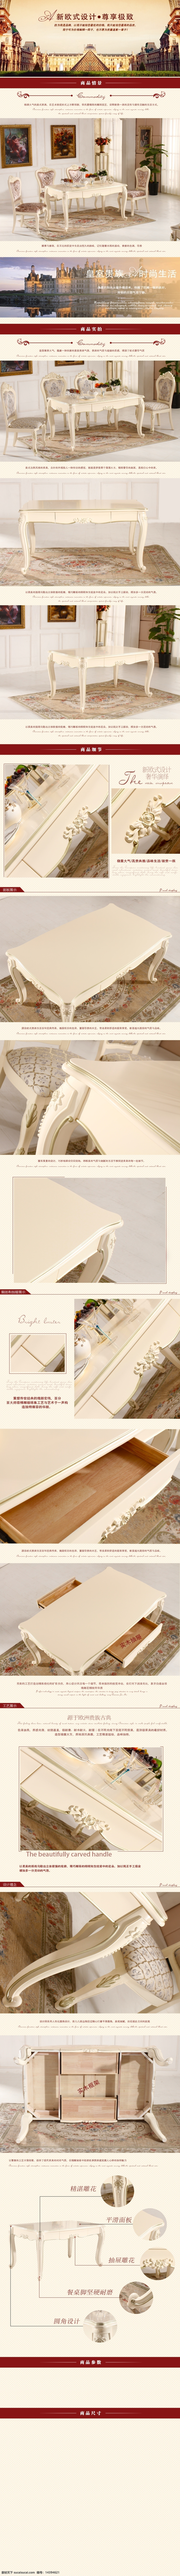 象牙白餐桌 欧式家具 侧面 商品情景 包含了 商品细节 商品 实拍 尺寸 包含 商品实拍尺寸 还 正面 和细节 和商品描述 原创设计 原创淘宝设计